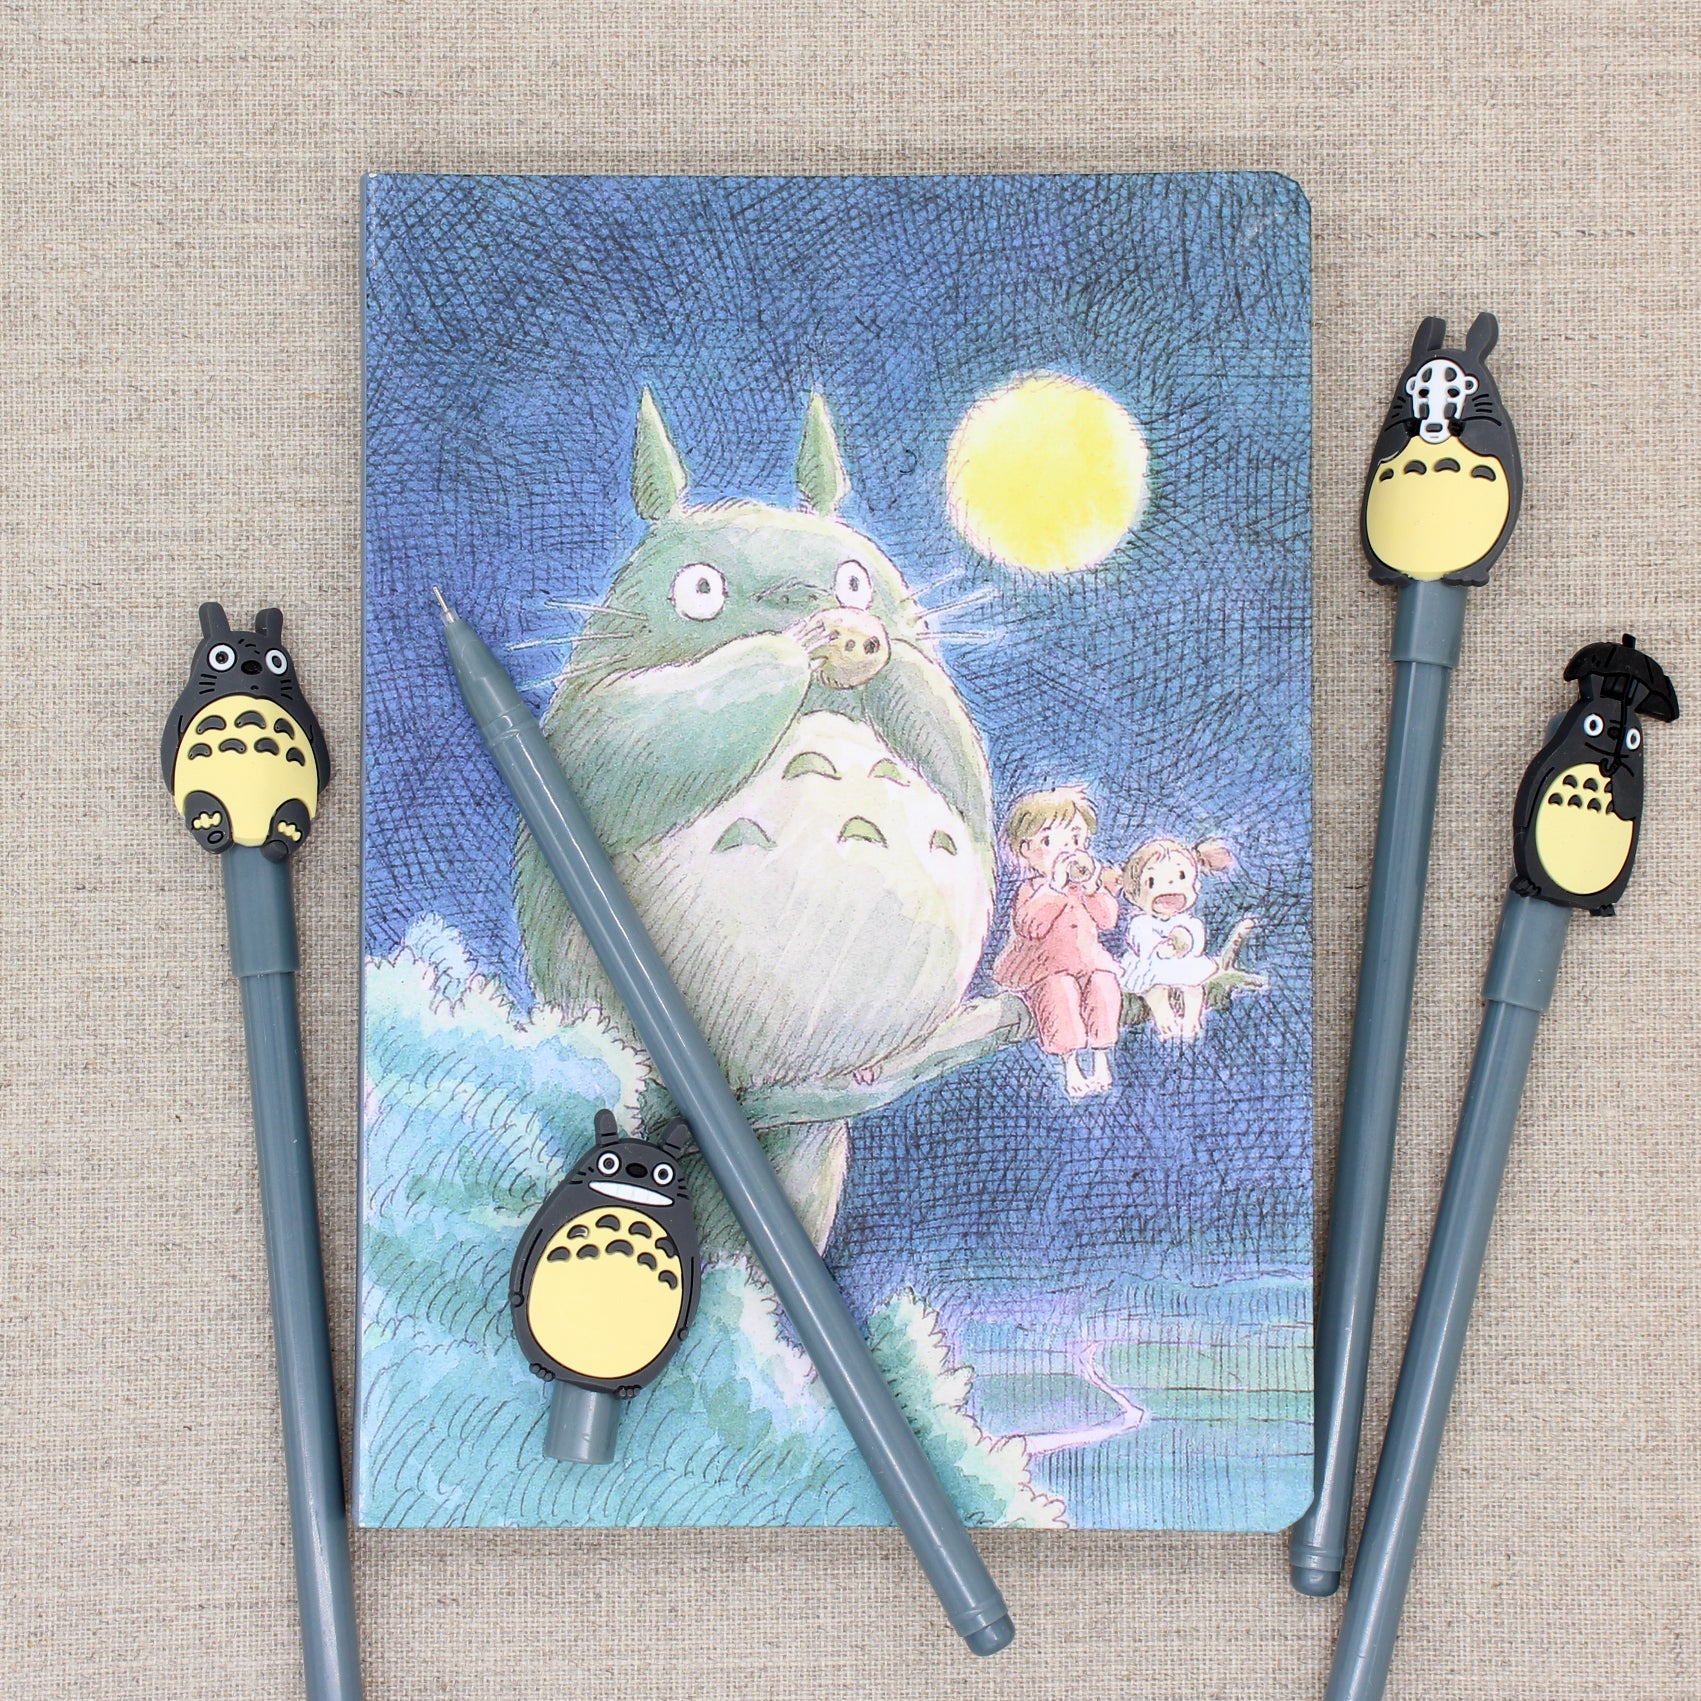 My Neighbor Totoro Journal